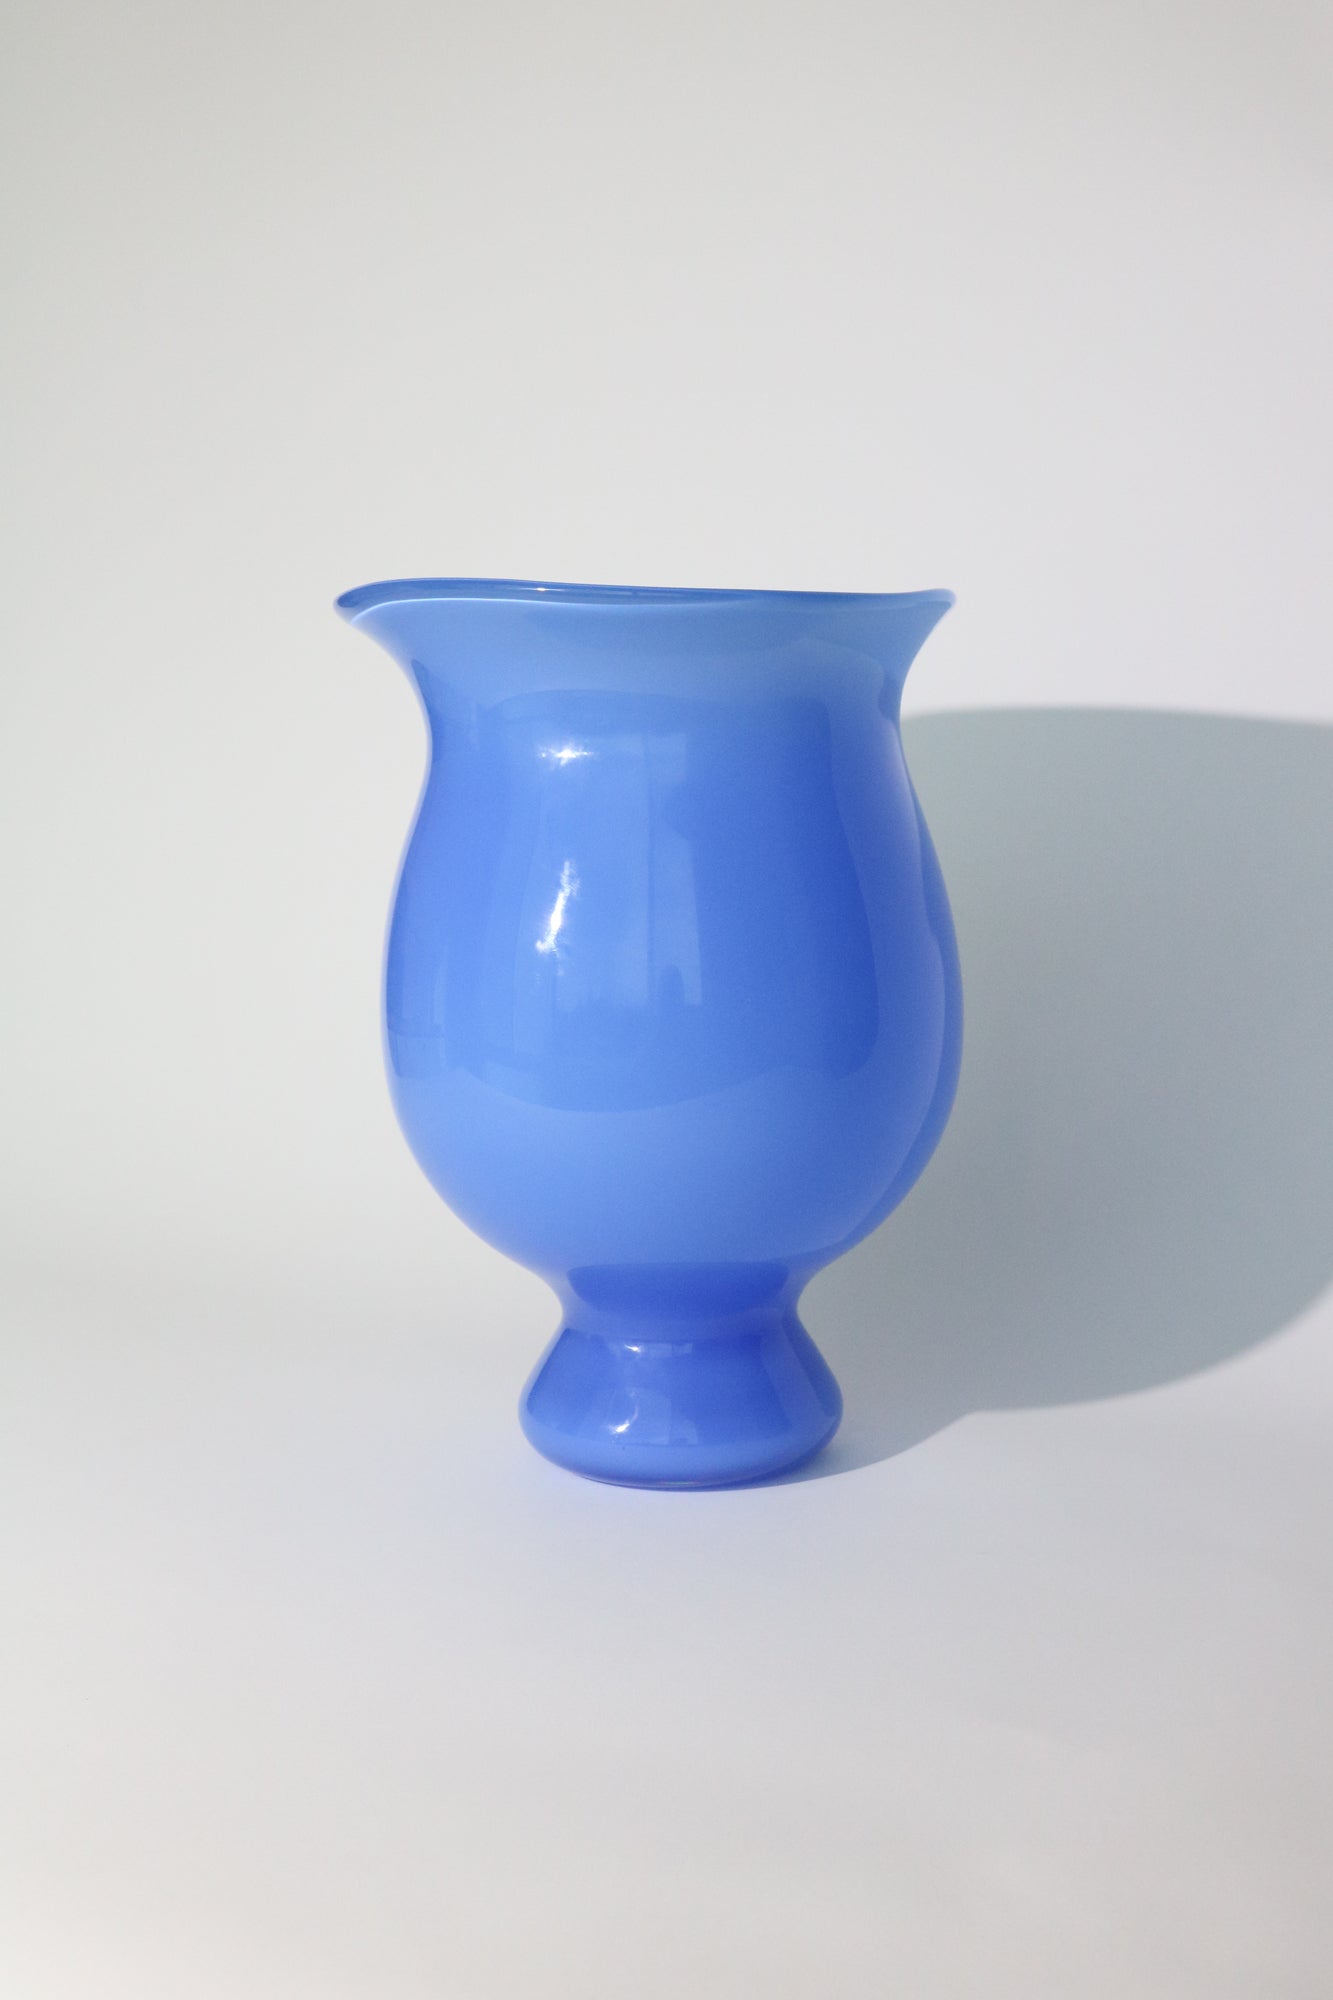 Helle-Mardahl-The-Medi-Glass-Vase-in-Blue-Lollipop-Shop-Sommer